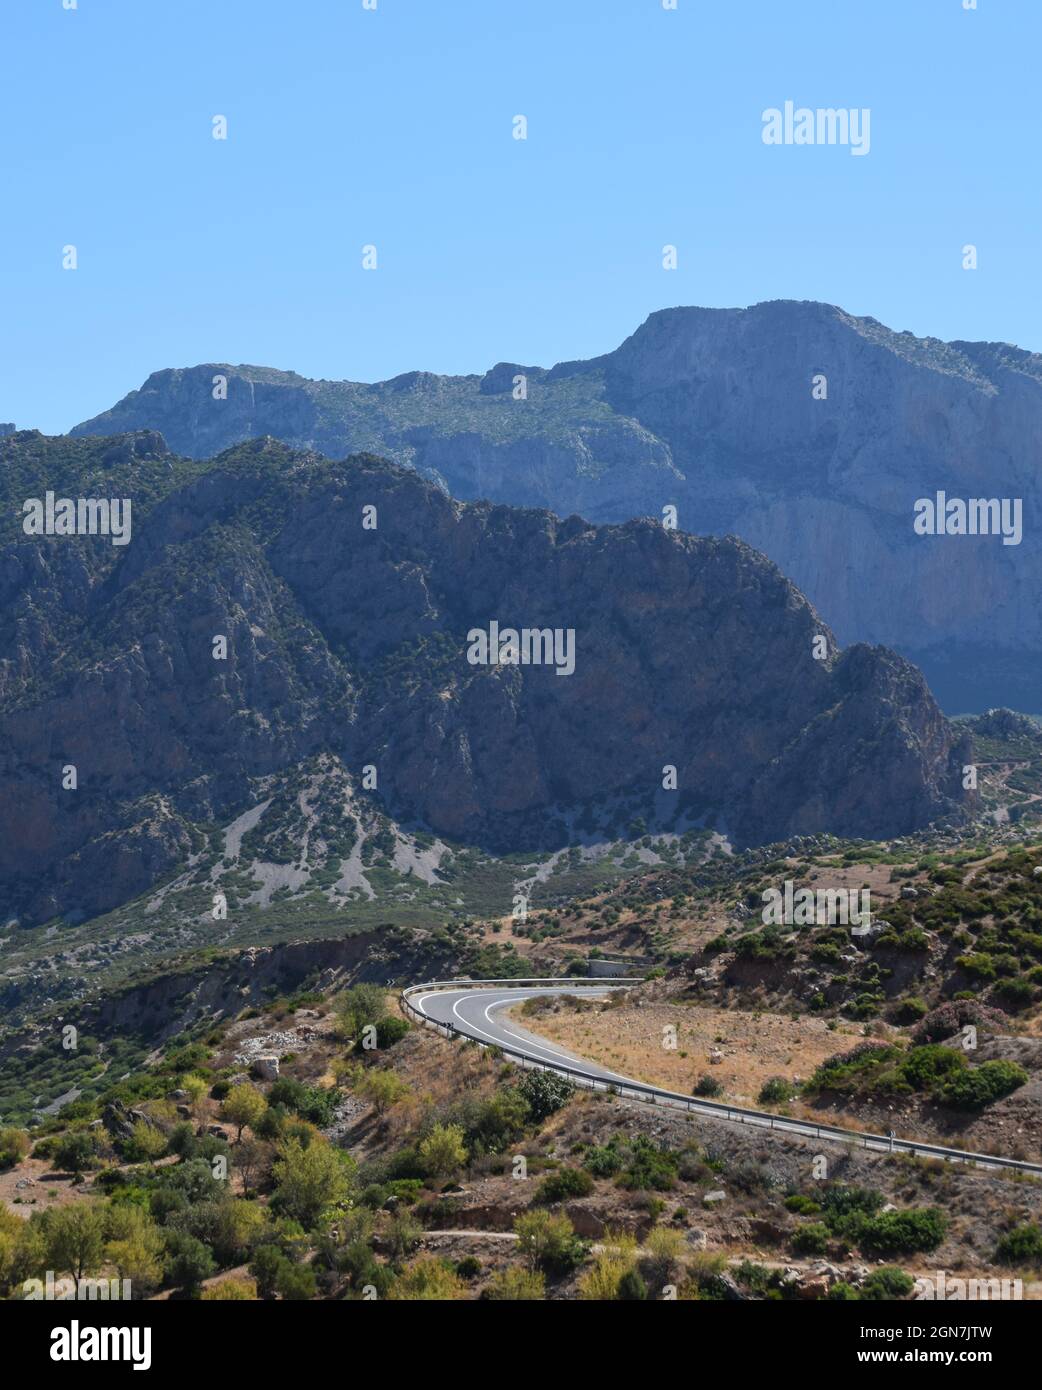 Route vide montagne dans le RIF entre Oued Laou et Chefchaouen Maroc Banque D'Images